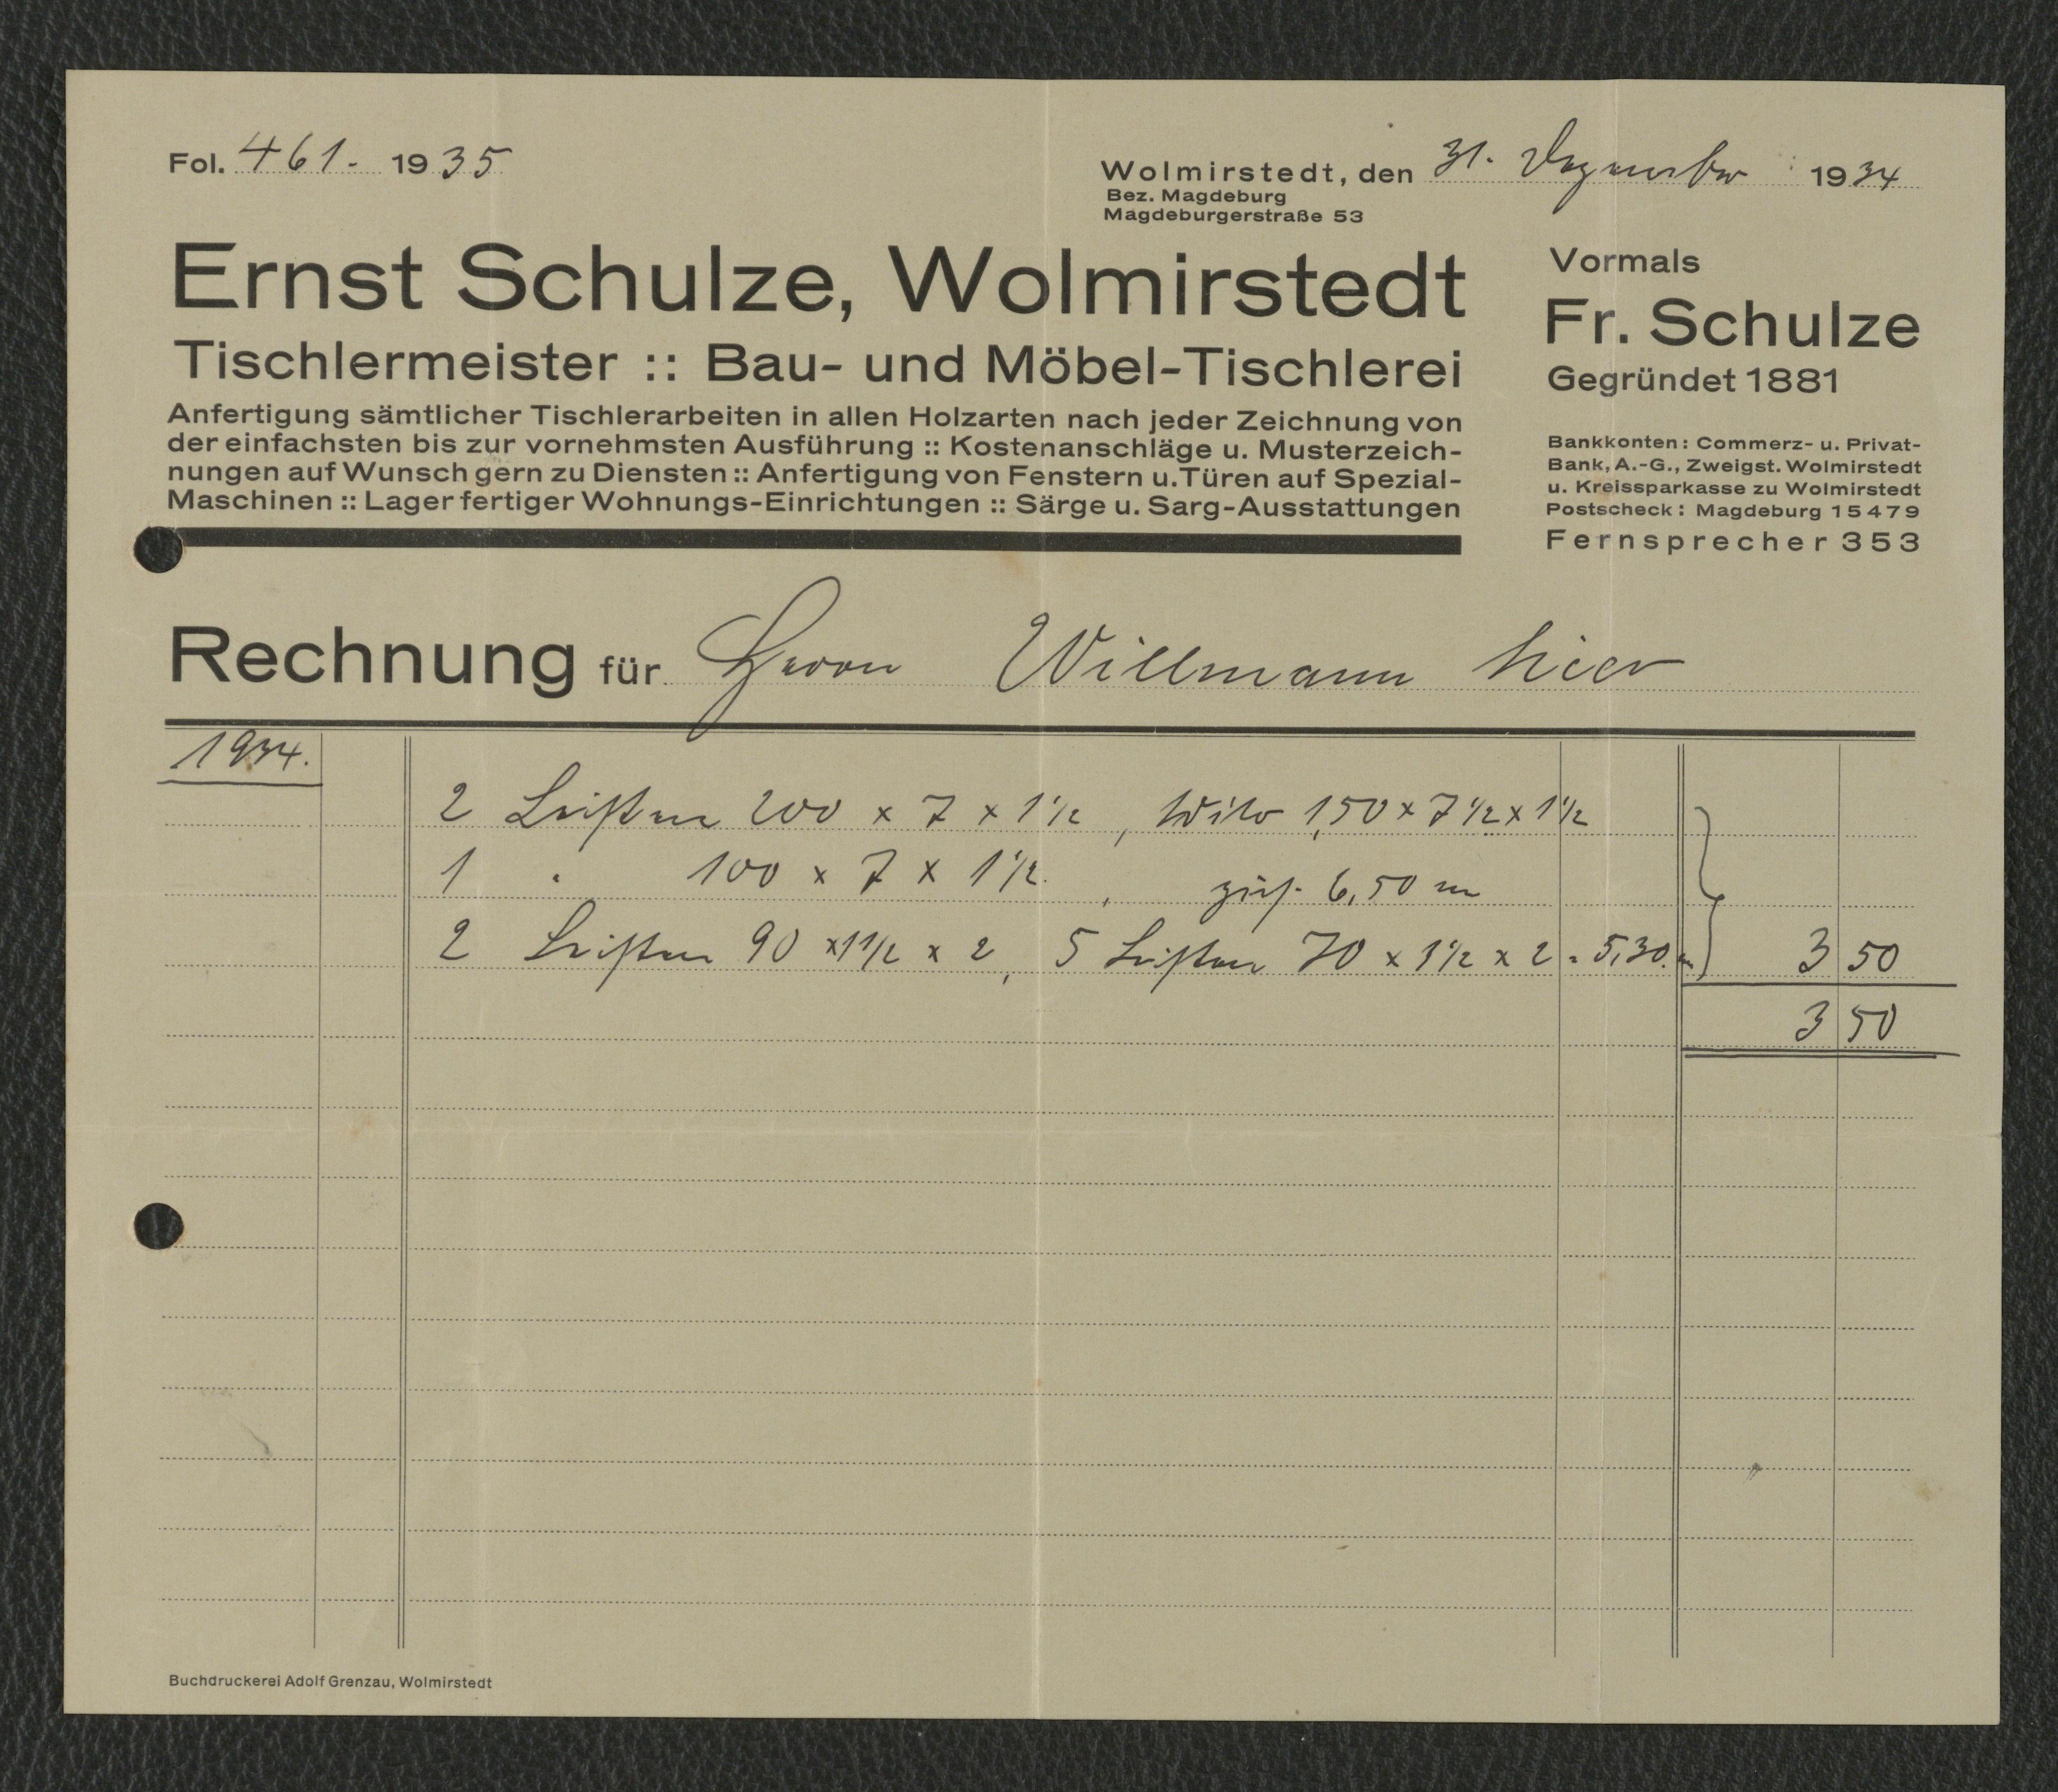 Rechnung Tischlermeister Ernst Schulze für Willmann, Wolmirstedt vom 31.12.1934 (Museum Wolmirstedt RR-F)